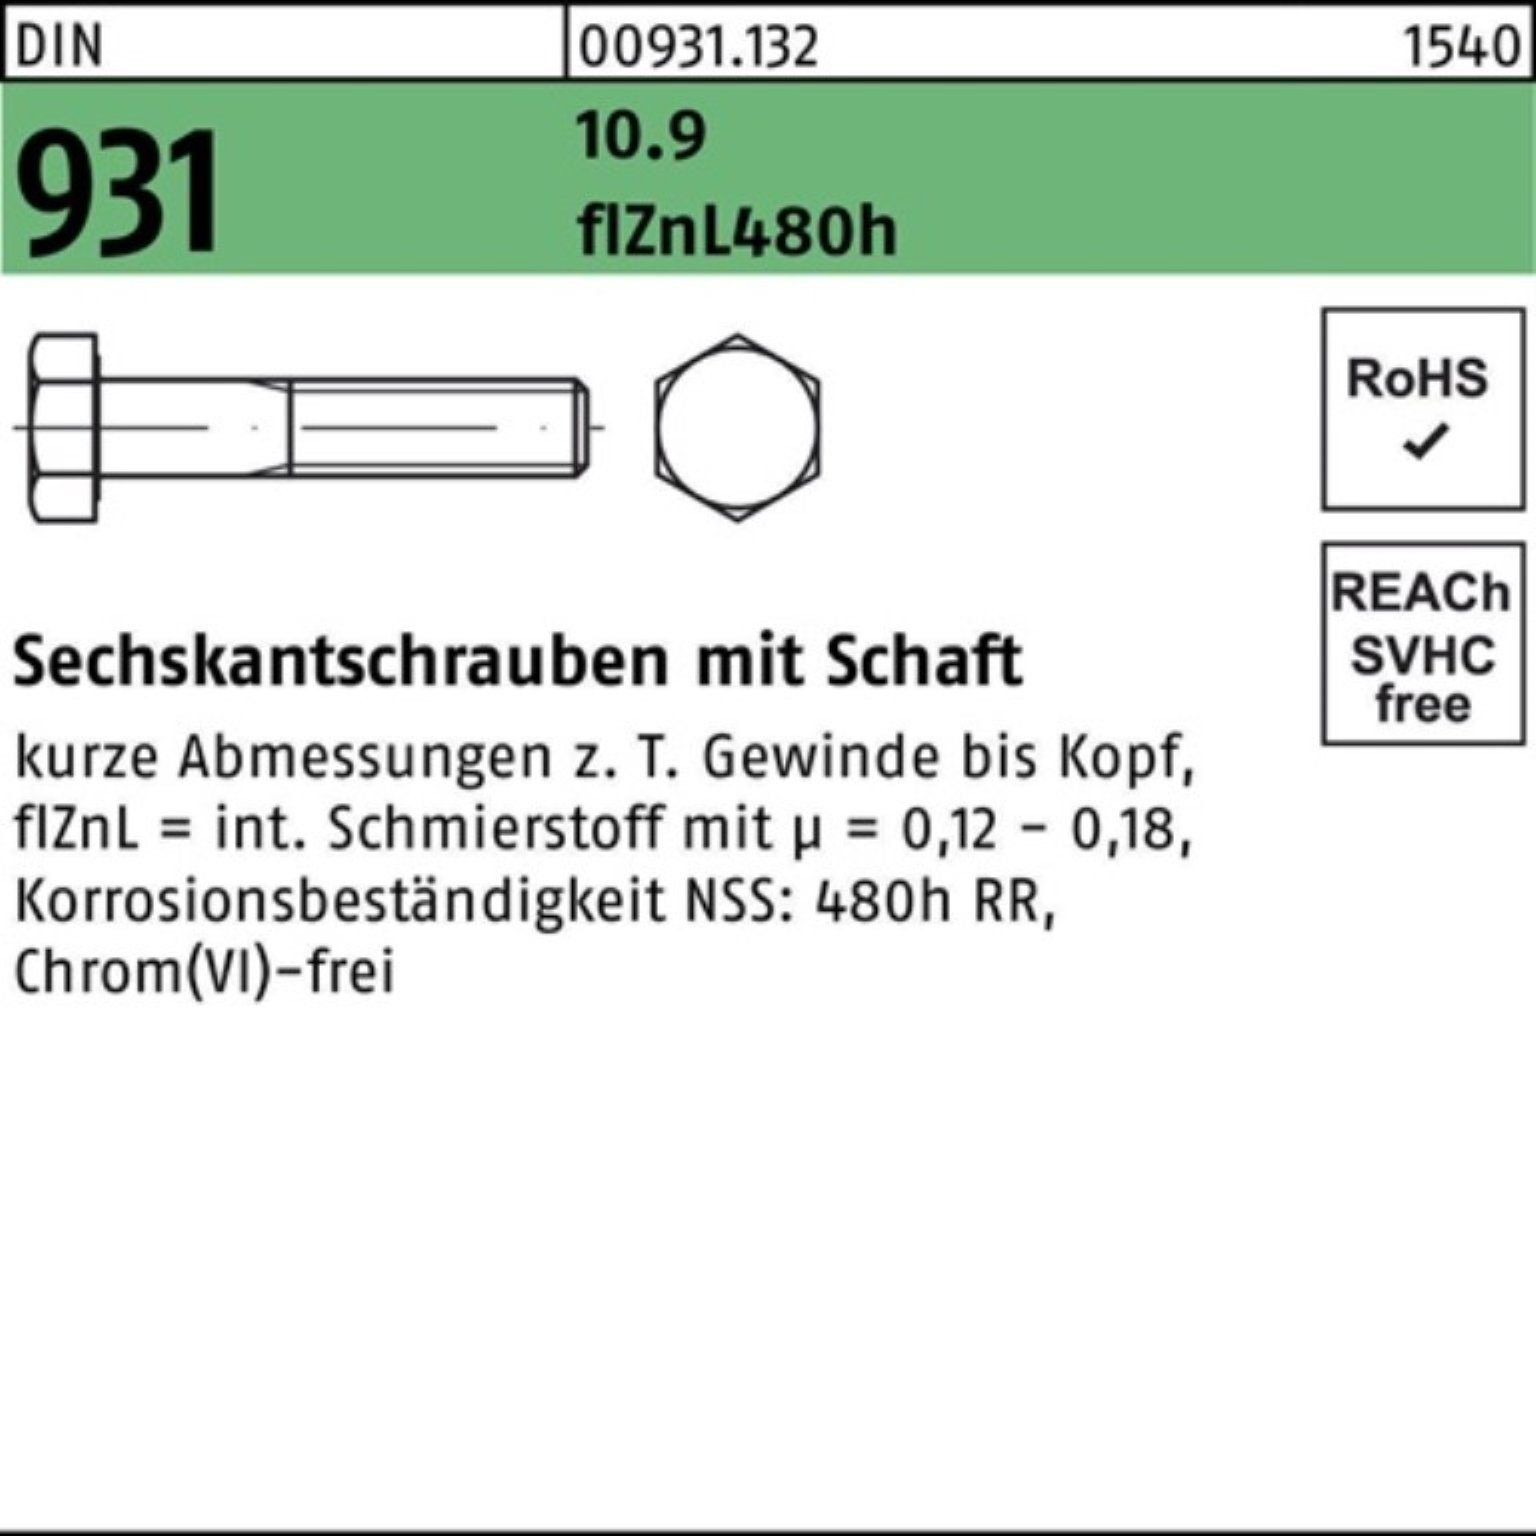 55 M6x DIN Reyher Sechskantschraube Schaft Pack 10.9 Sechskantschraube 931 flZnL/nc/x/x/4 200er